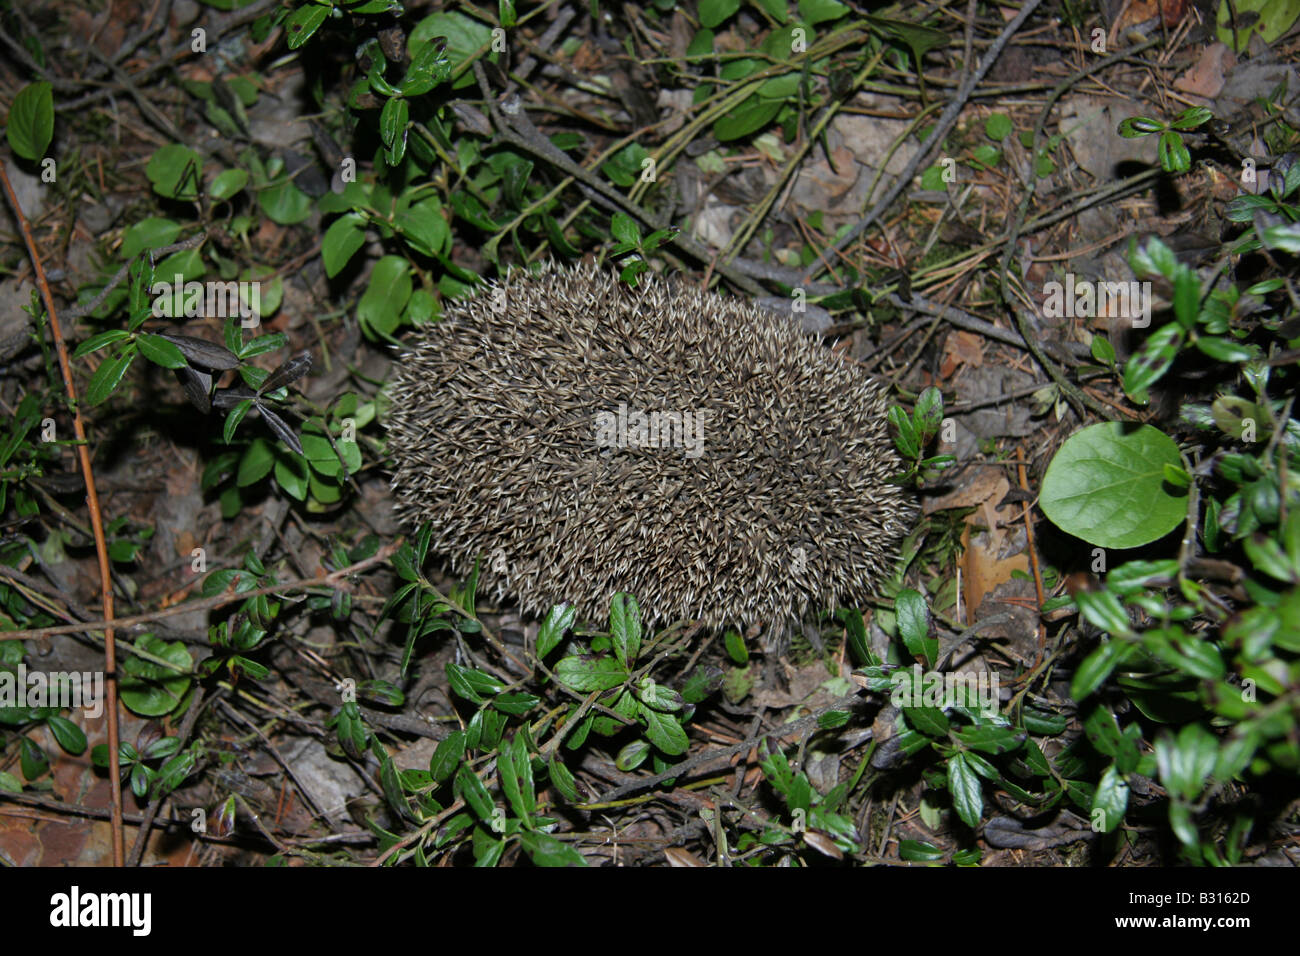 Une forêt hedgehog adoptant une position défensive roulés dans une boule serrée avec ses épines en saillie. Banque D'Images